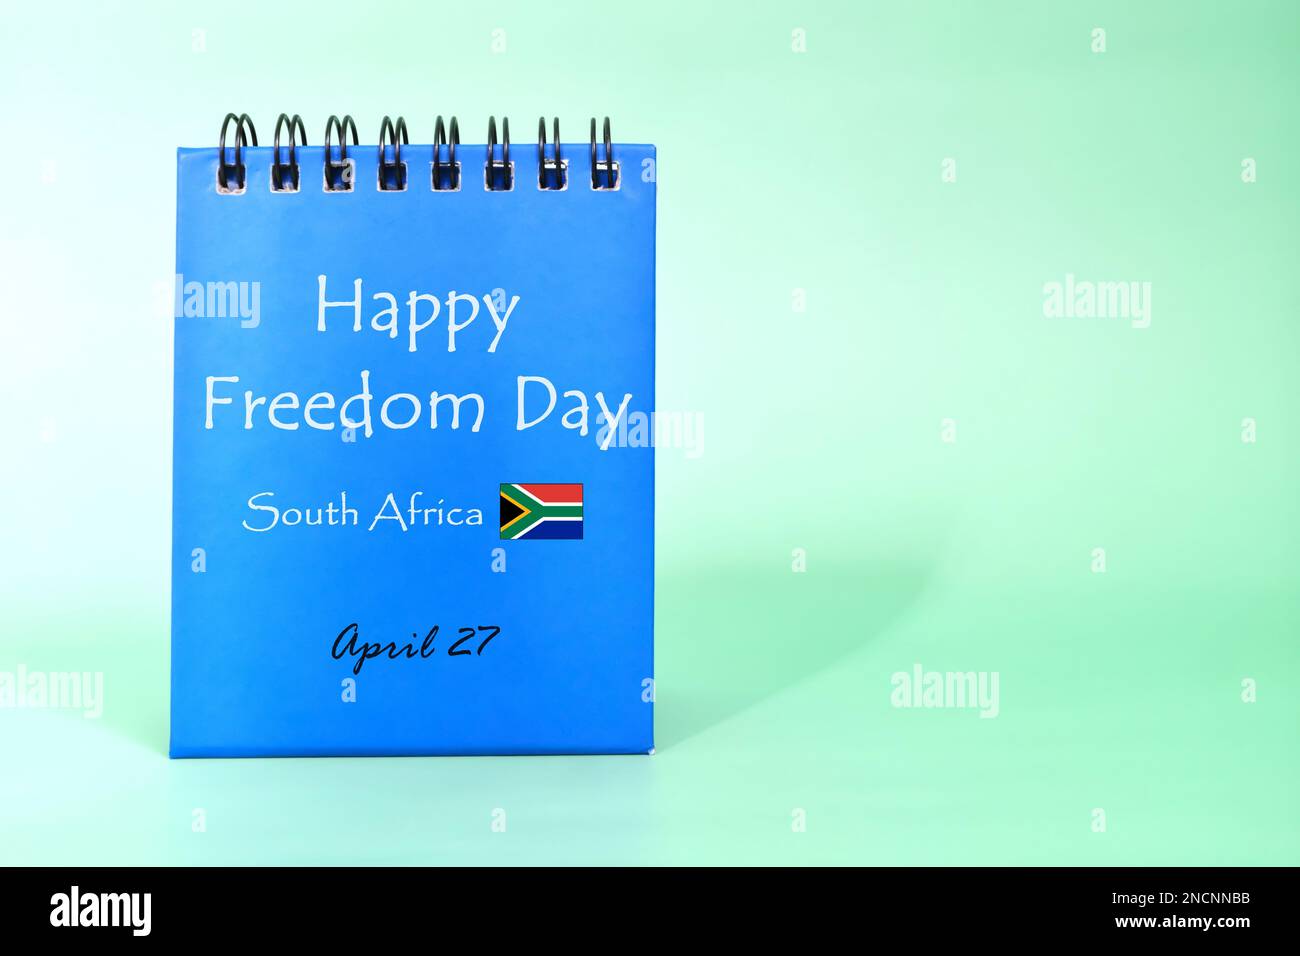 Happy Freedom Day South Africa – Begrüßungserinnerung auf blauem Bürokalender mit Flaggensymbol. Konzept der Feierlichkeiten zum Nationalfeiertag. Stockfoto